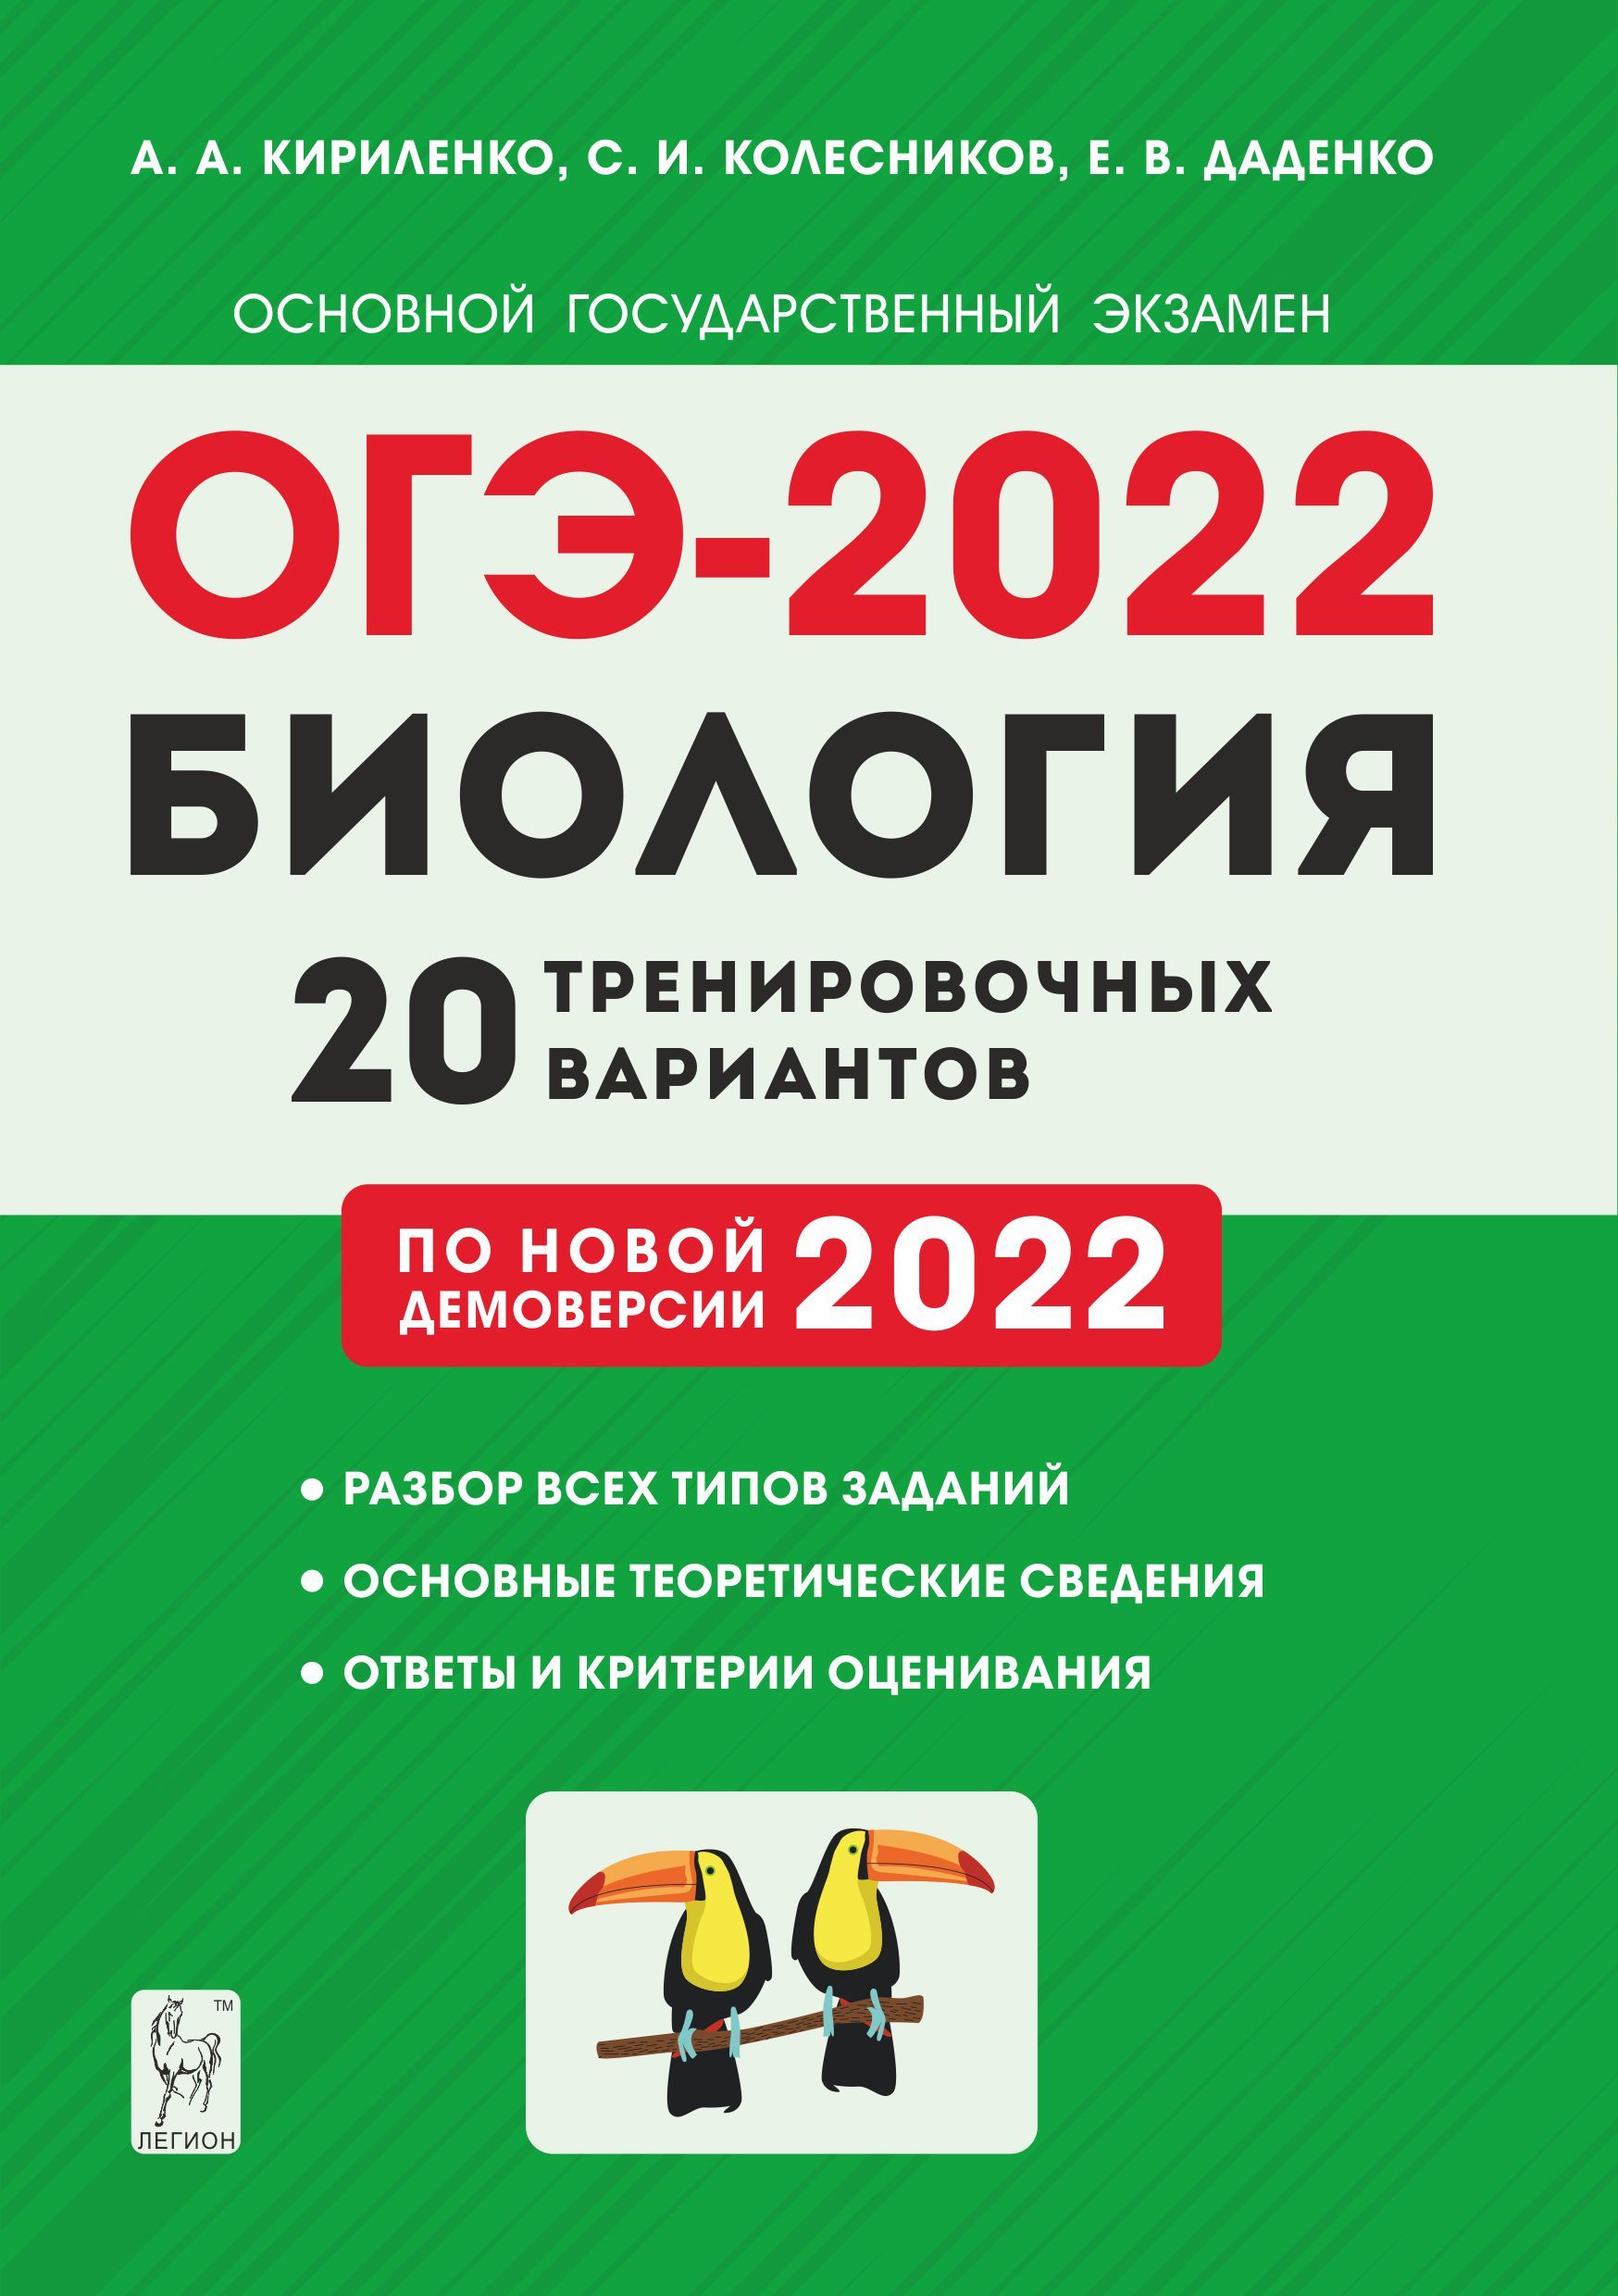 Биология. Подготовка к ОГЭ-2022. 9 класс. 20 тренировочных вариантов по демоверсии 2022 года